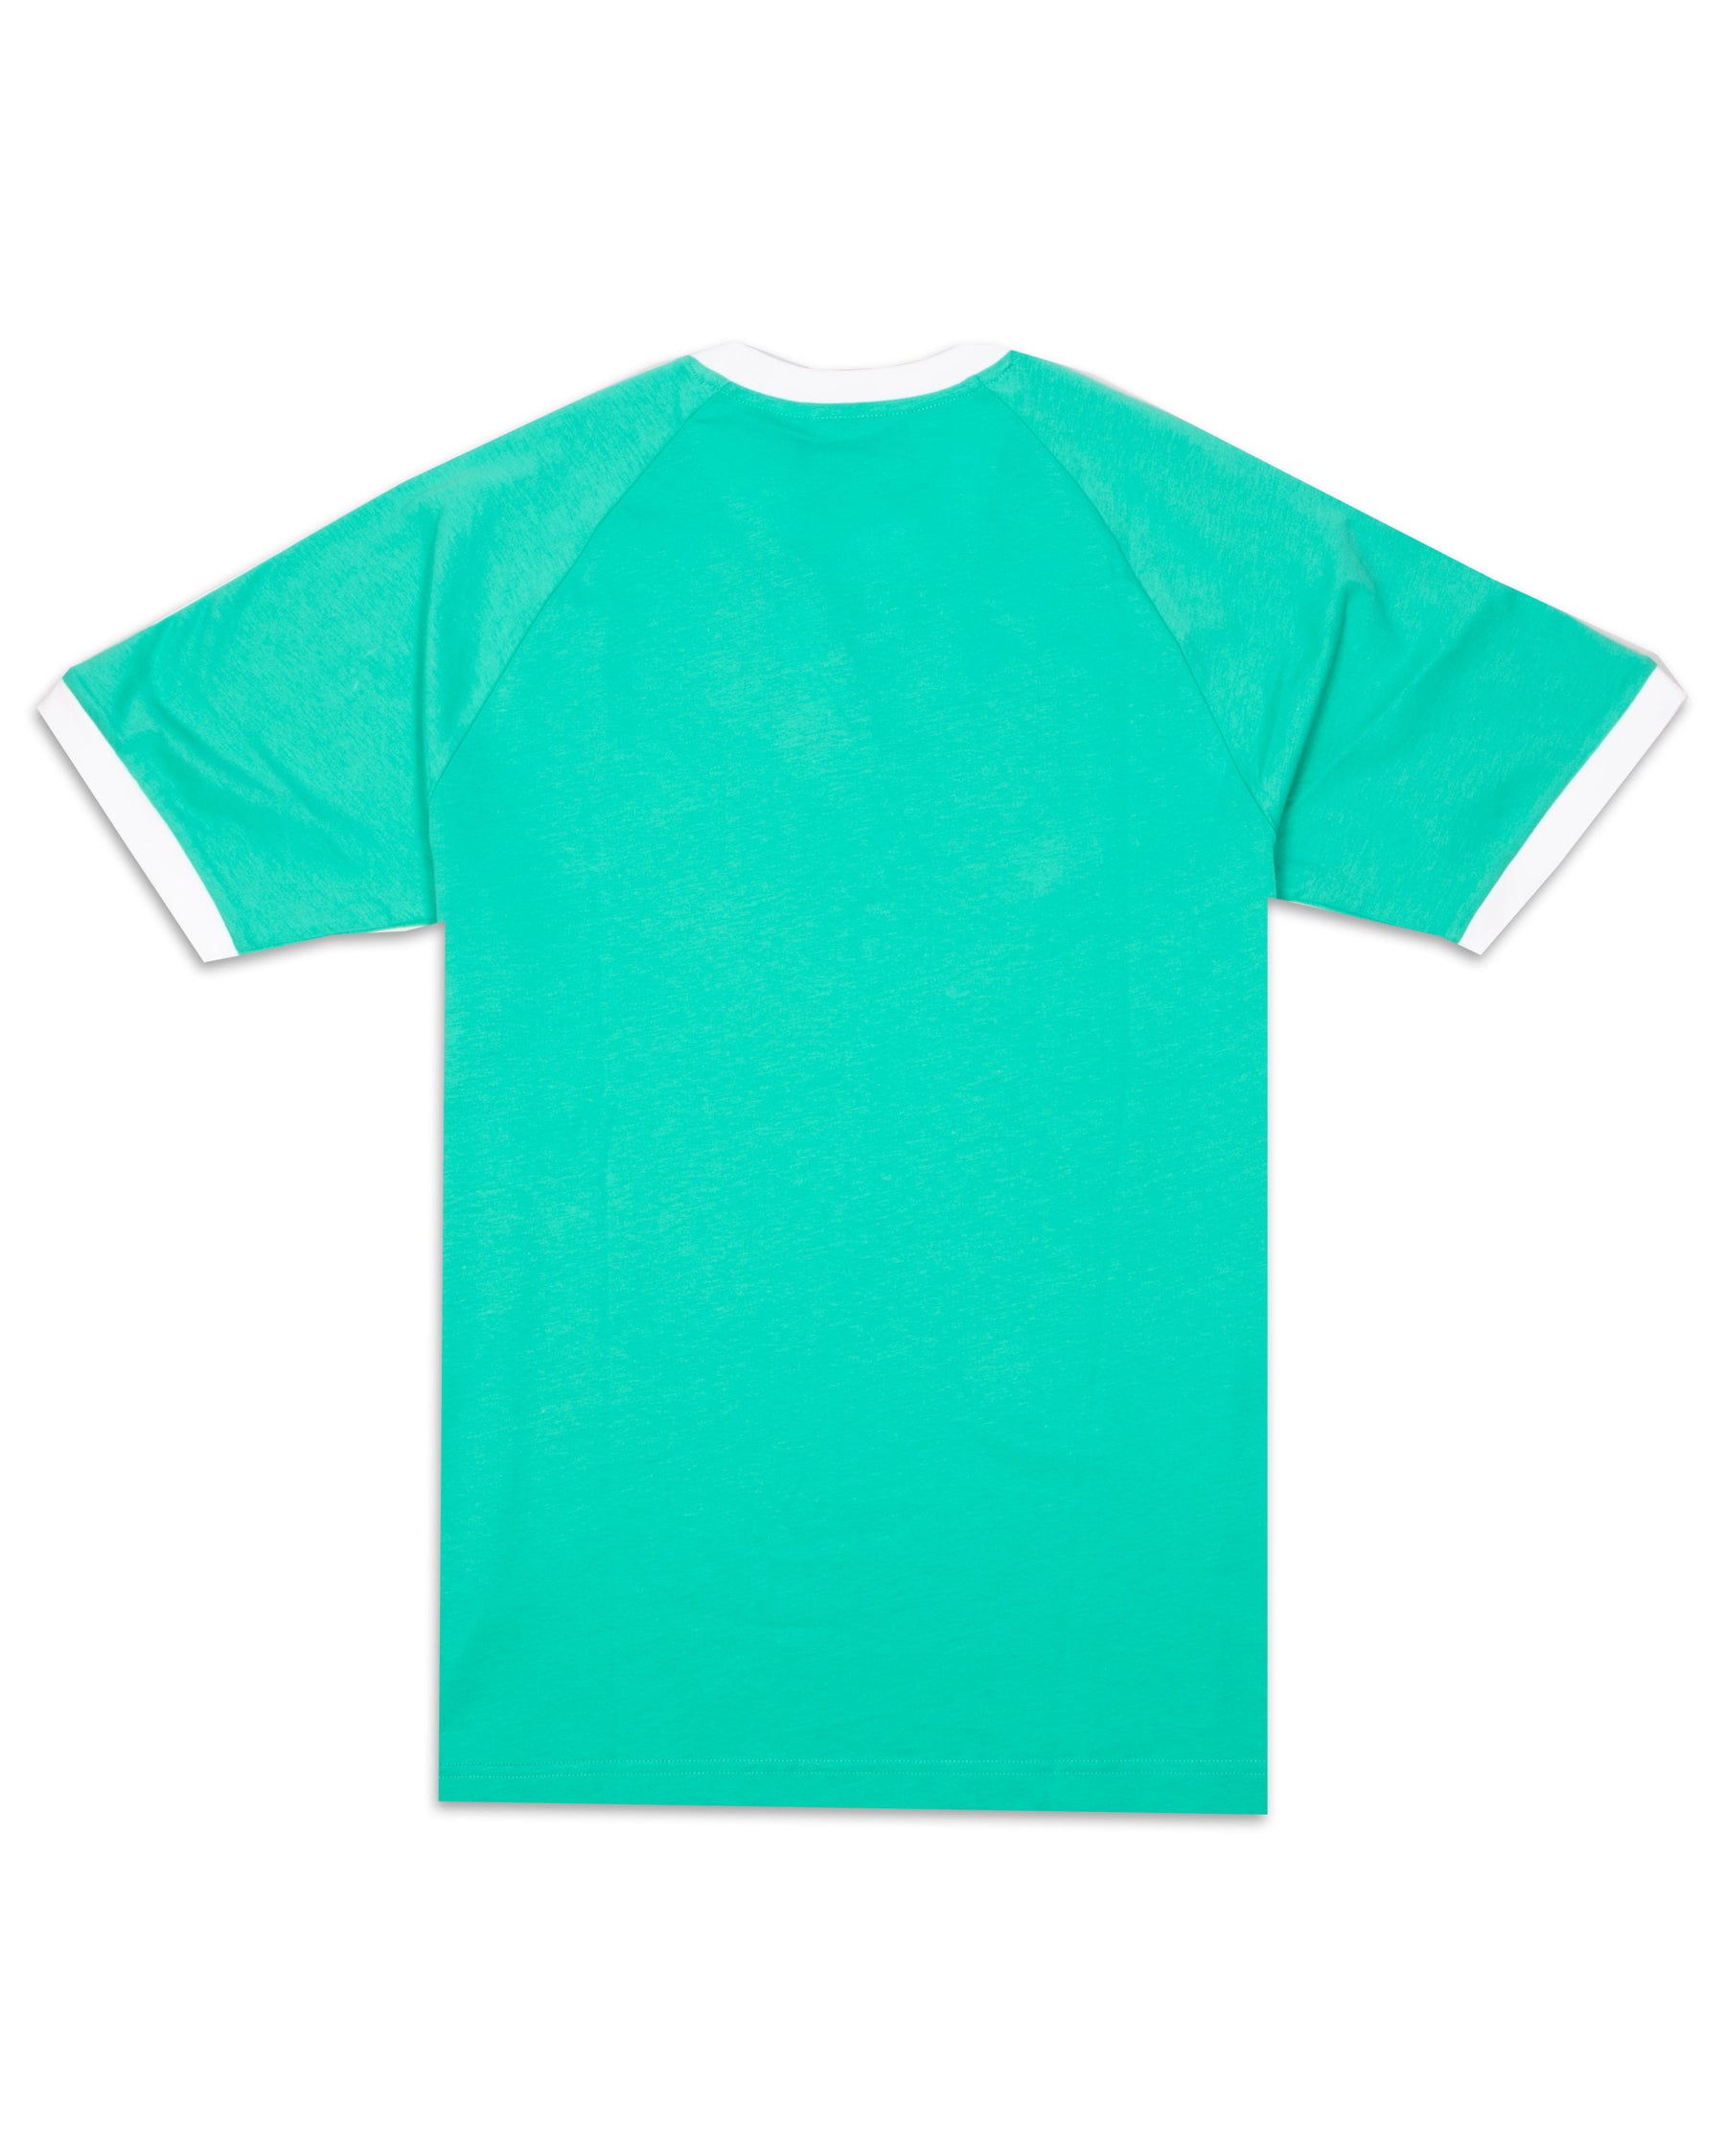 T-Shirt Uomo Adidas 3 Stripes Verde Acqua